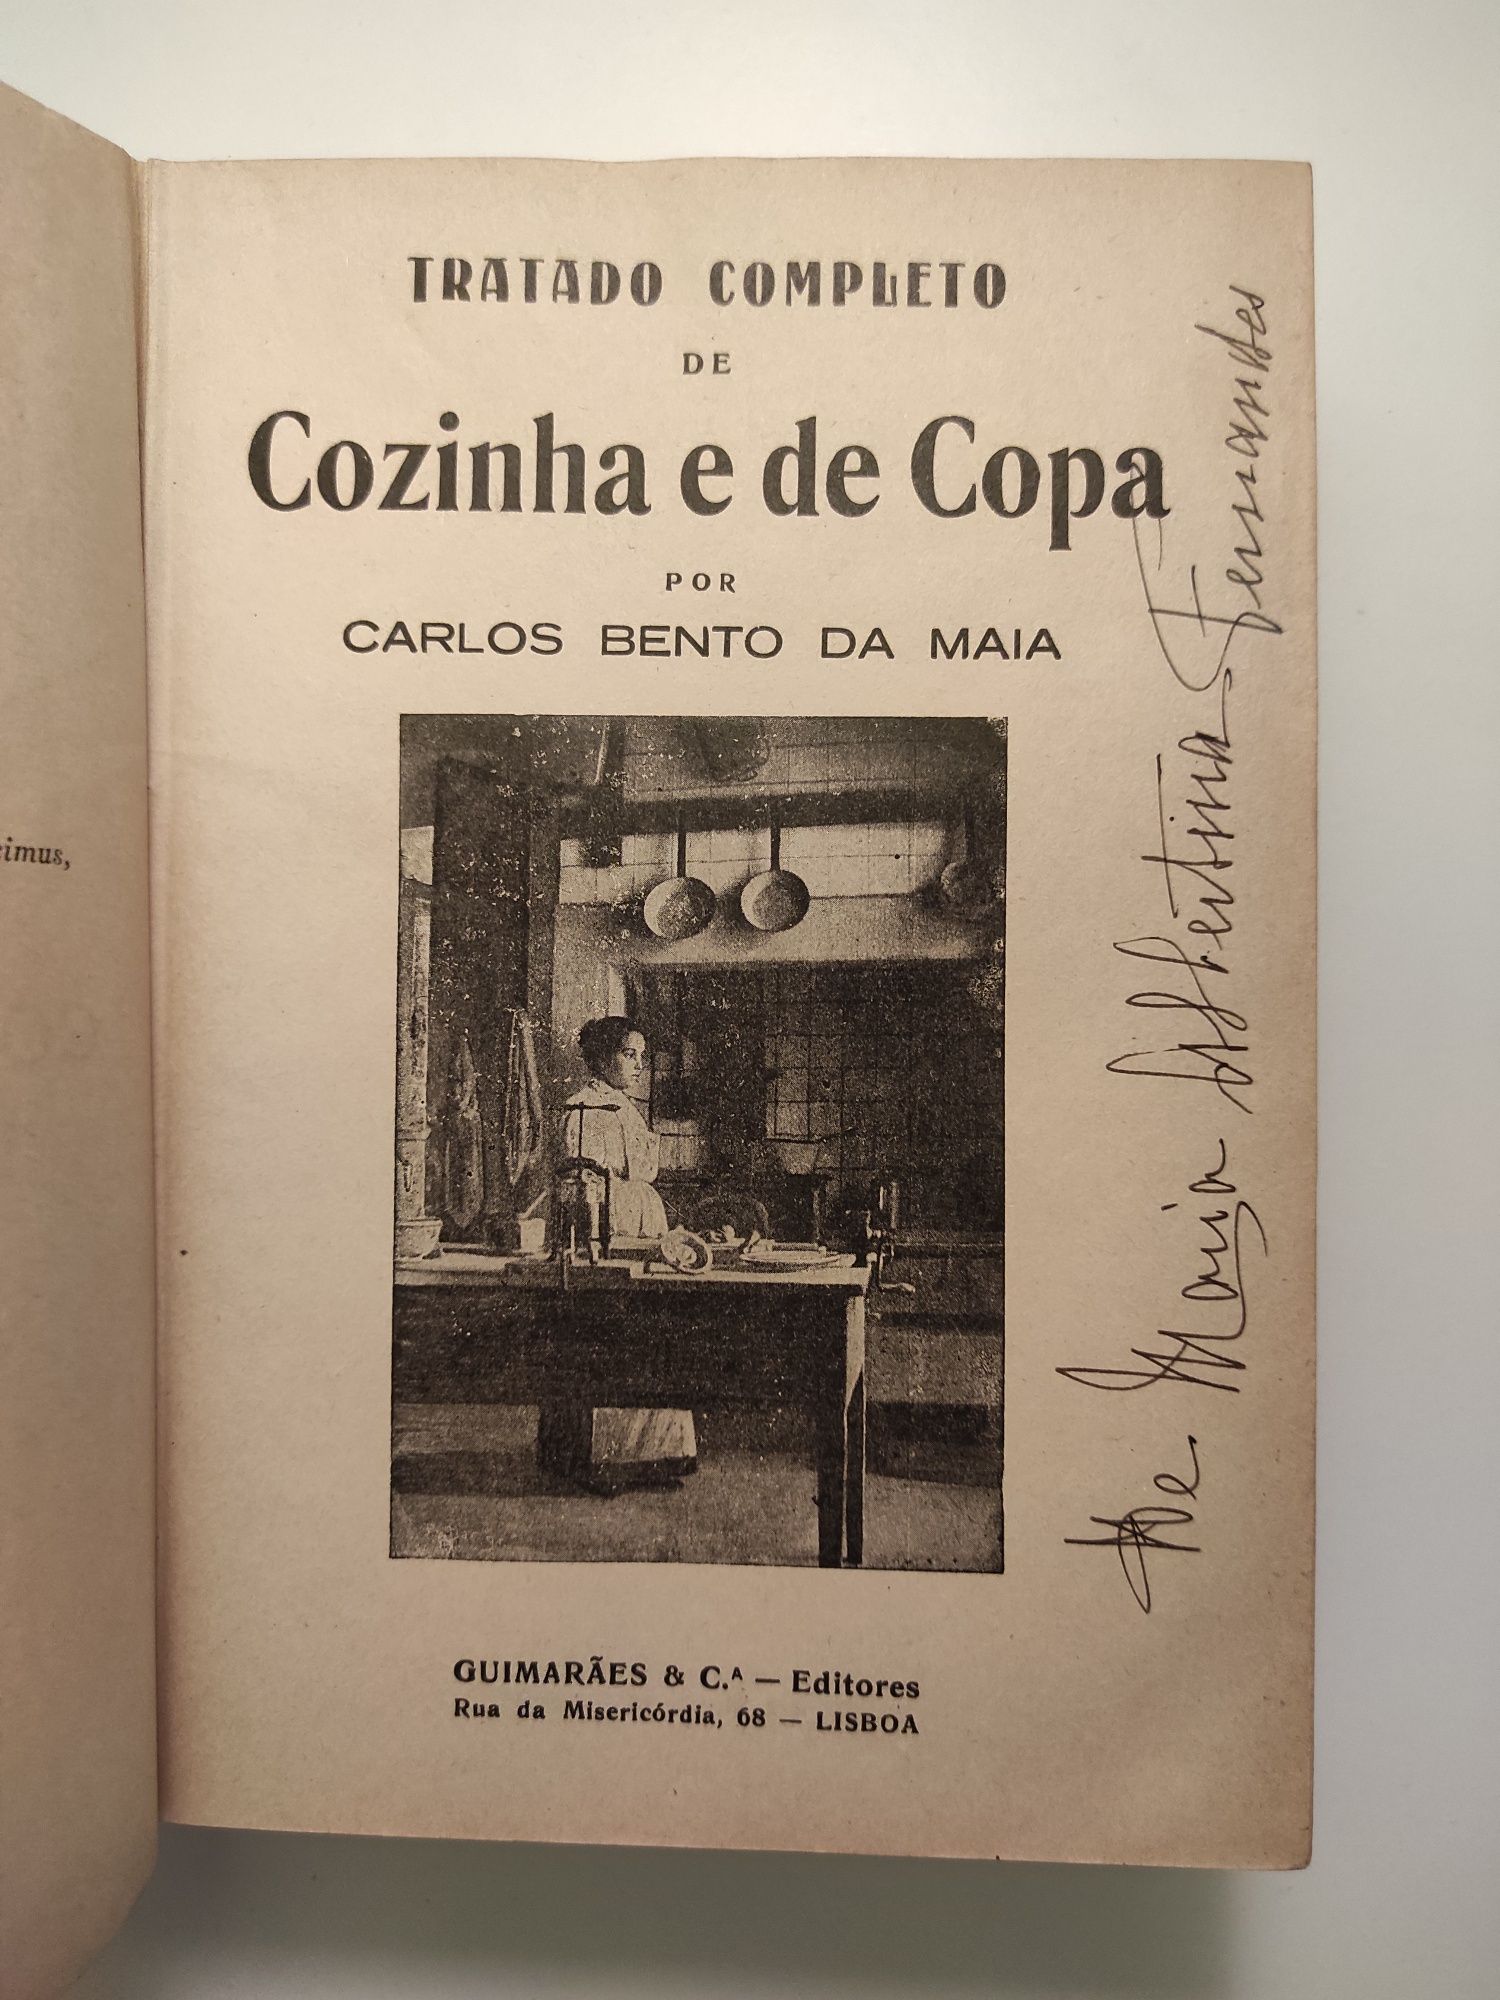 Tratado completo de cozinha e de copa por Carlos Bento da Maia de 1904